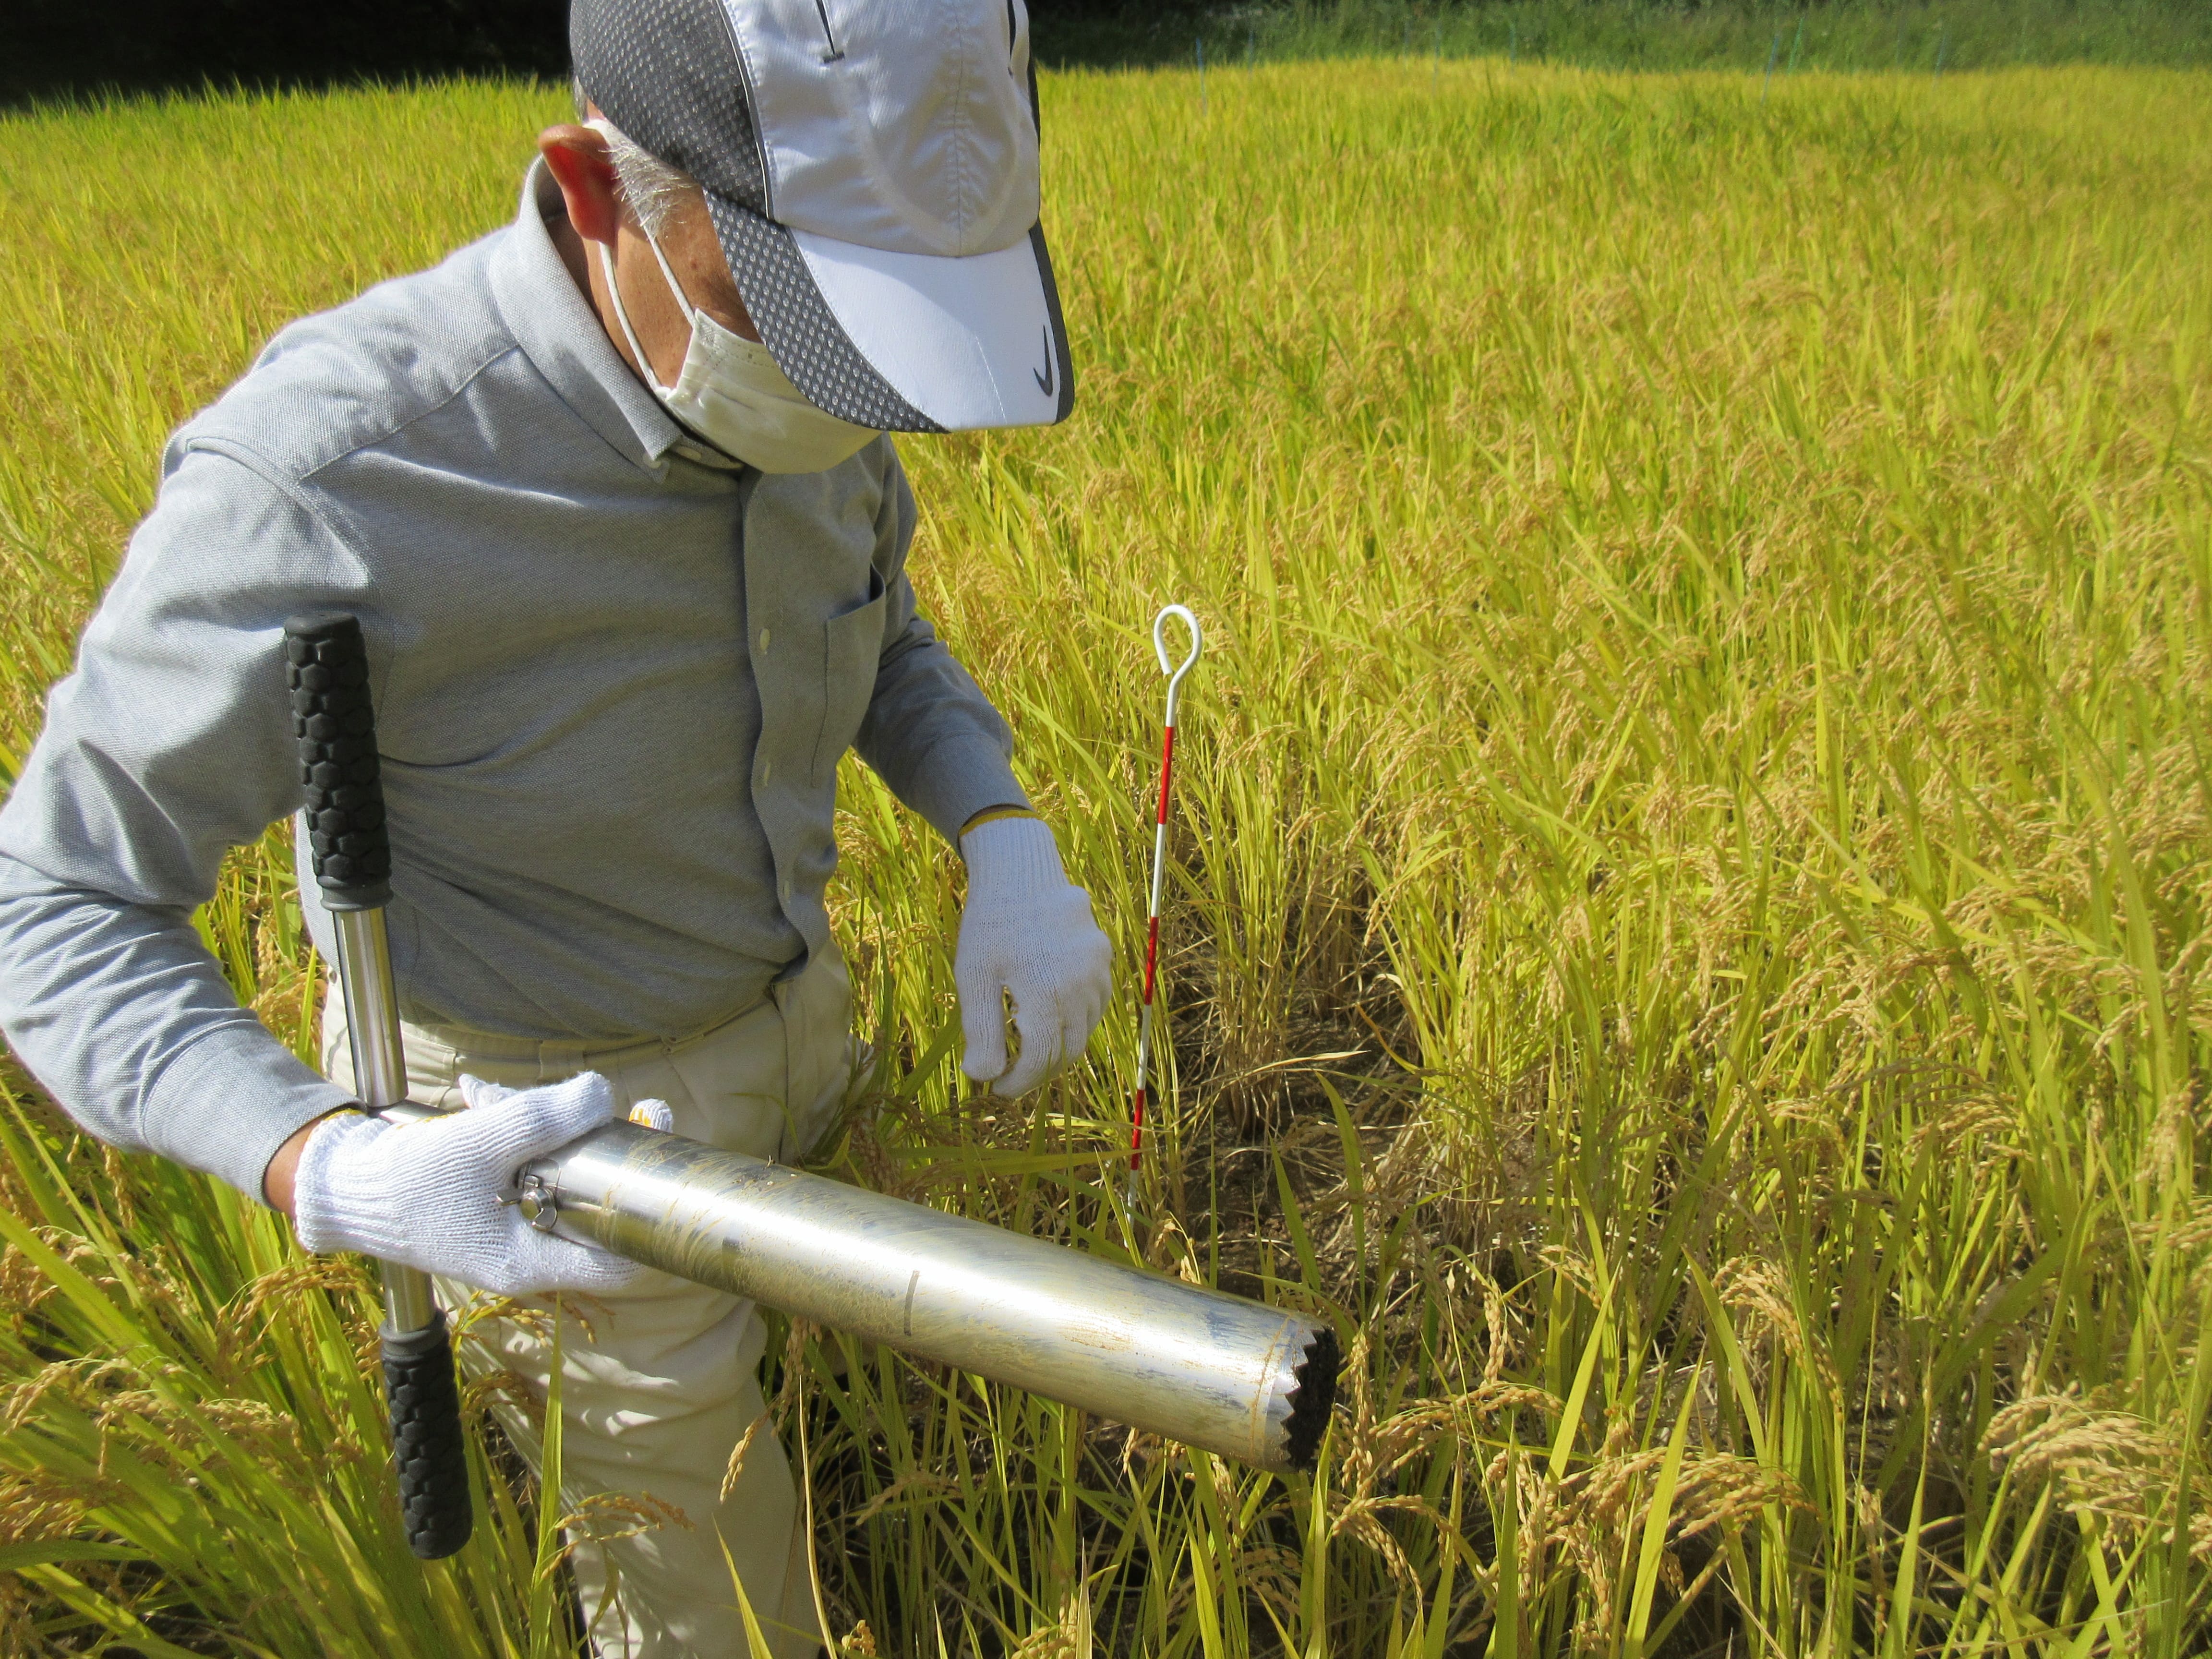 Prof. Tsukada using a soil sampler